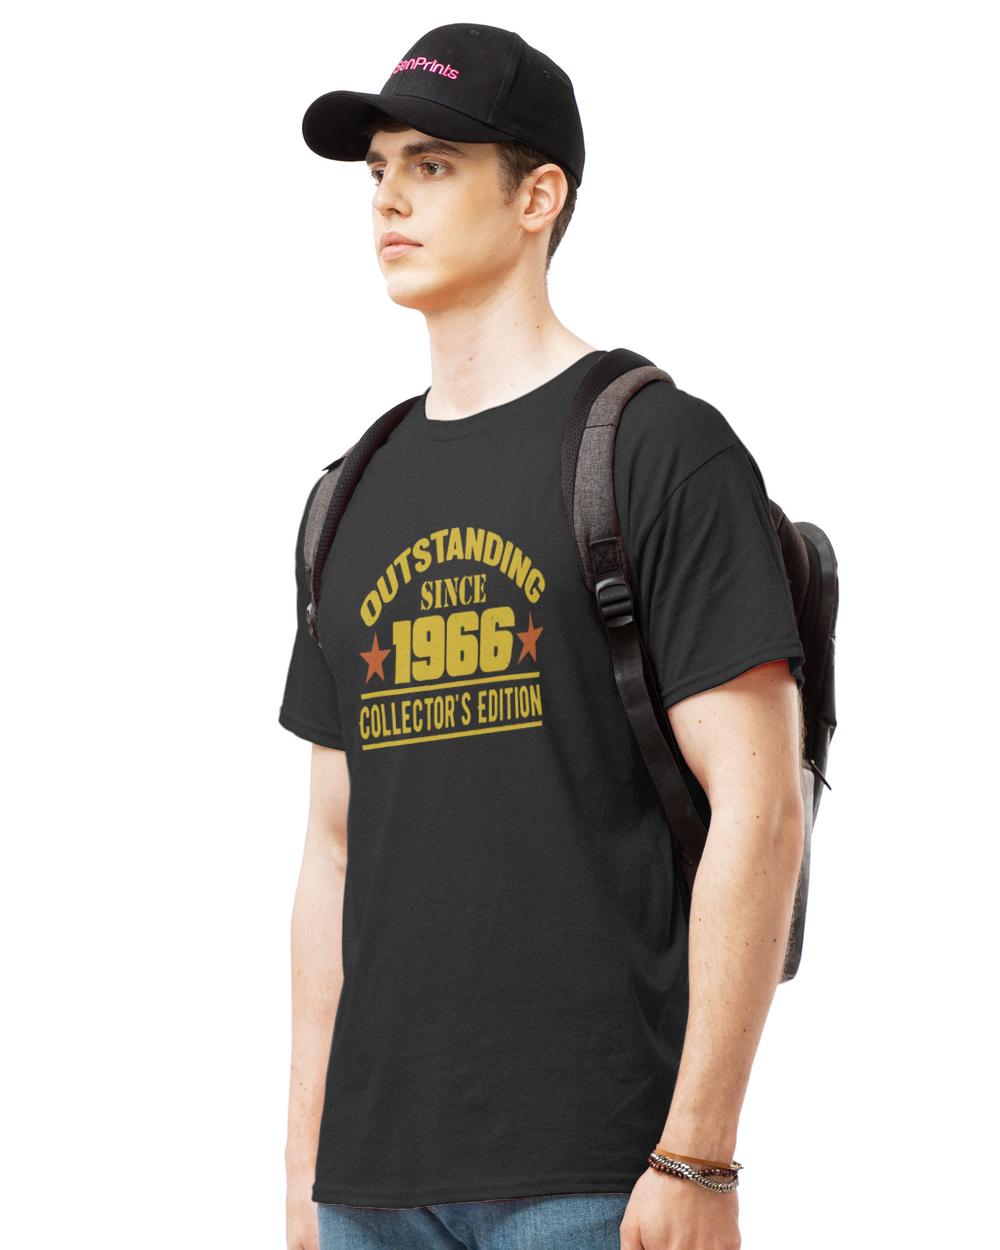 1966 Gift T-ShirtOutstanding Since 1966 T-Shirt